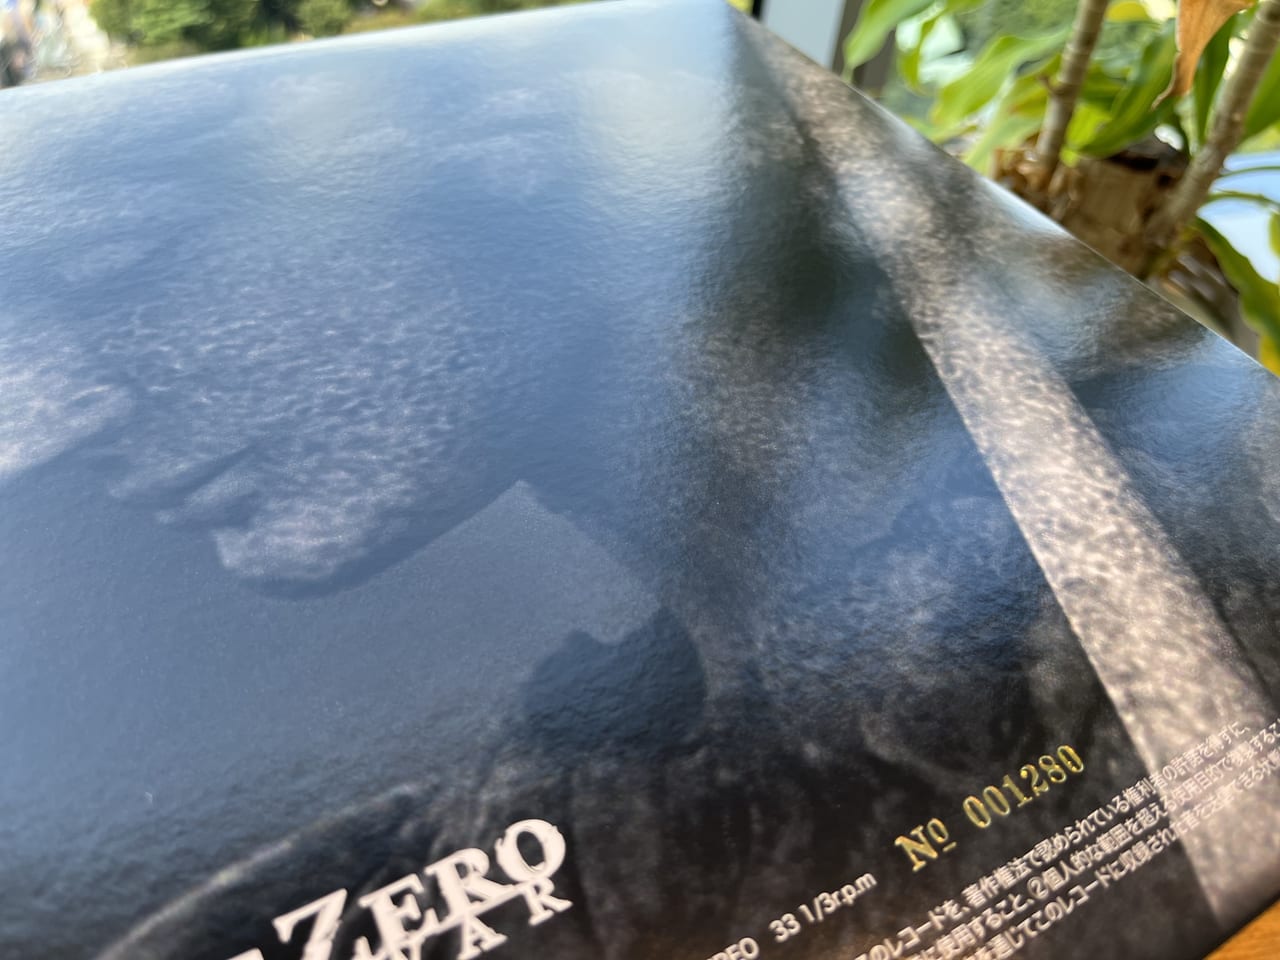 『エースコンバット・ゼロ』のアナログレコードが発売開始2